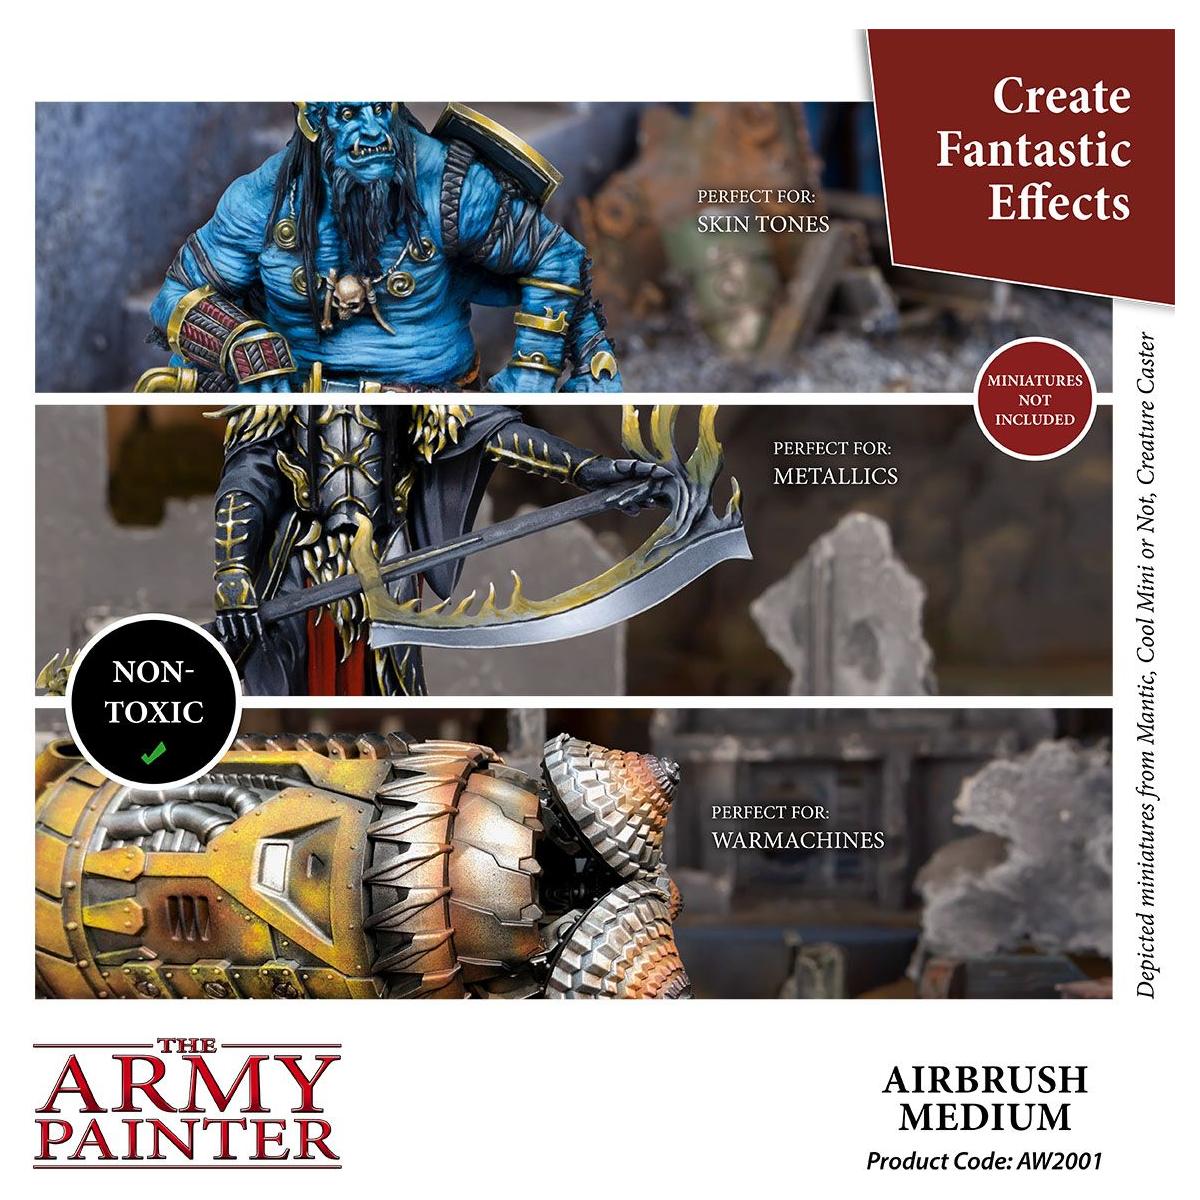 The Army Painter - Airbrush Medium Thinner